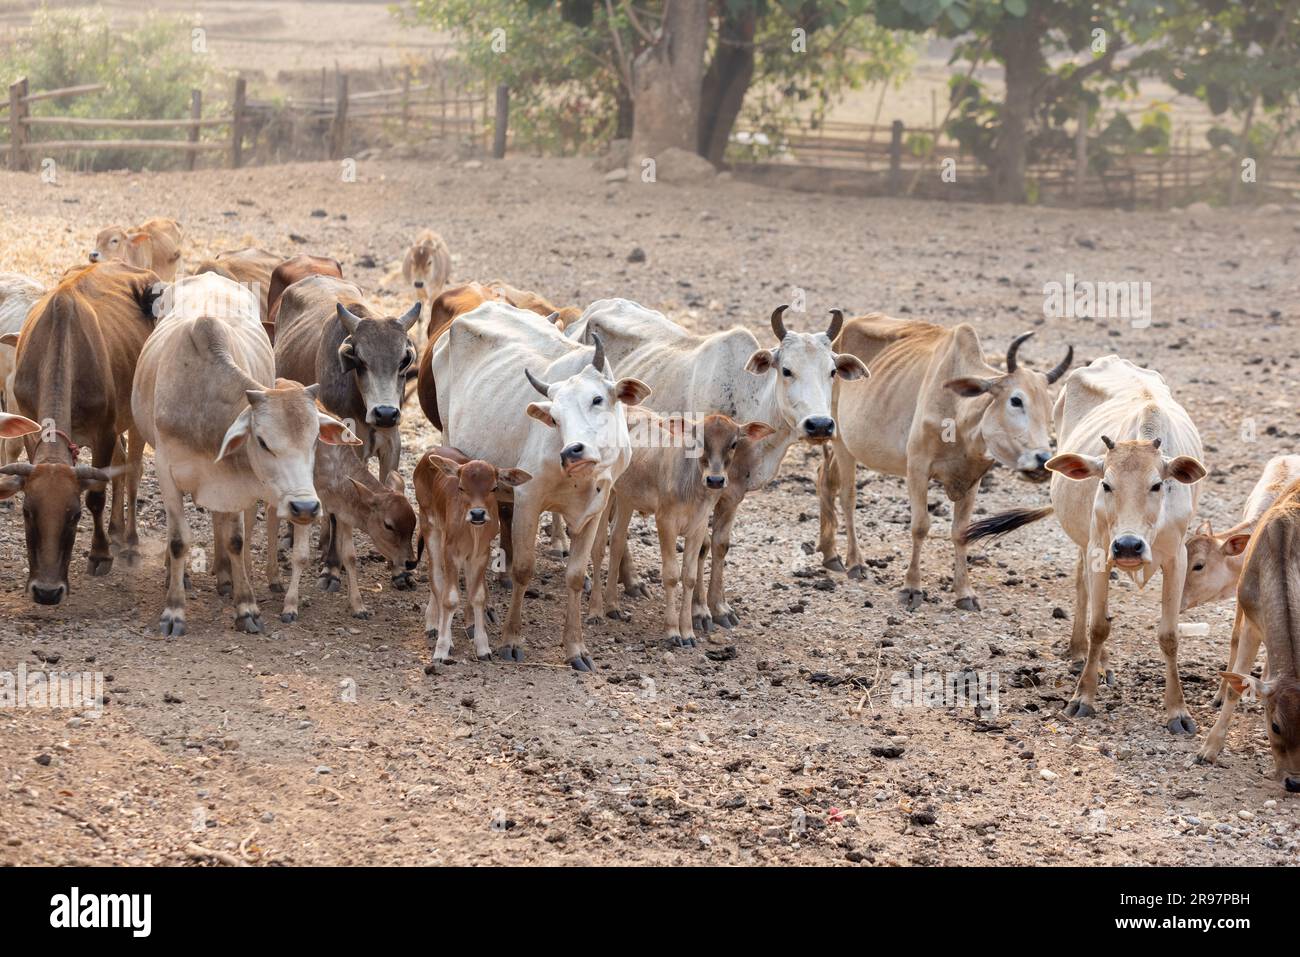 Troupeau de vaches asiatiques dans un ranch la production animale contribue aux émissions de gaz à effet de serre (GES) , Chiang mai Thaïlande. Banque D'Images